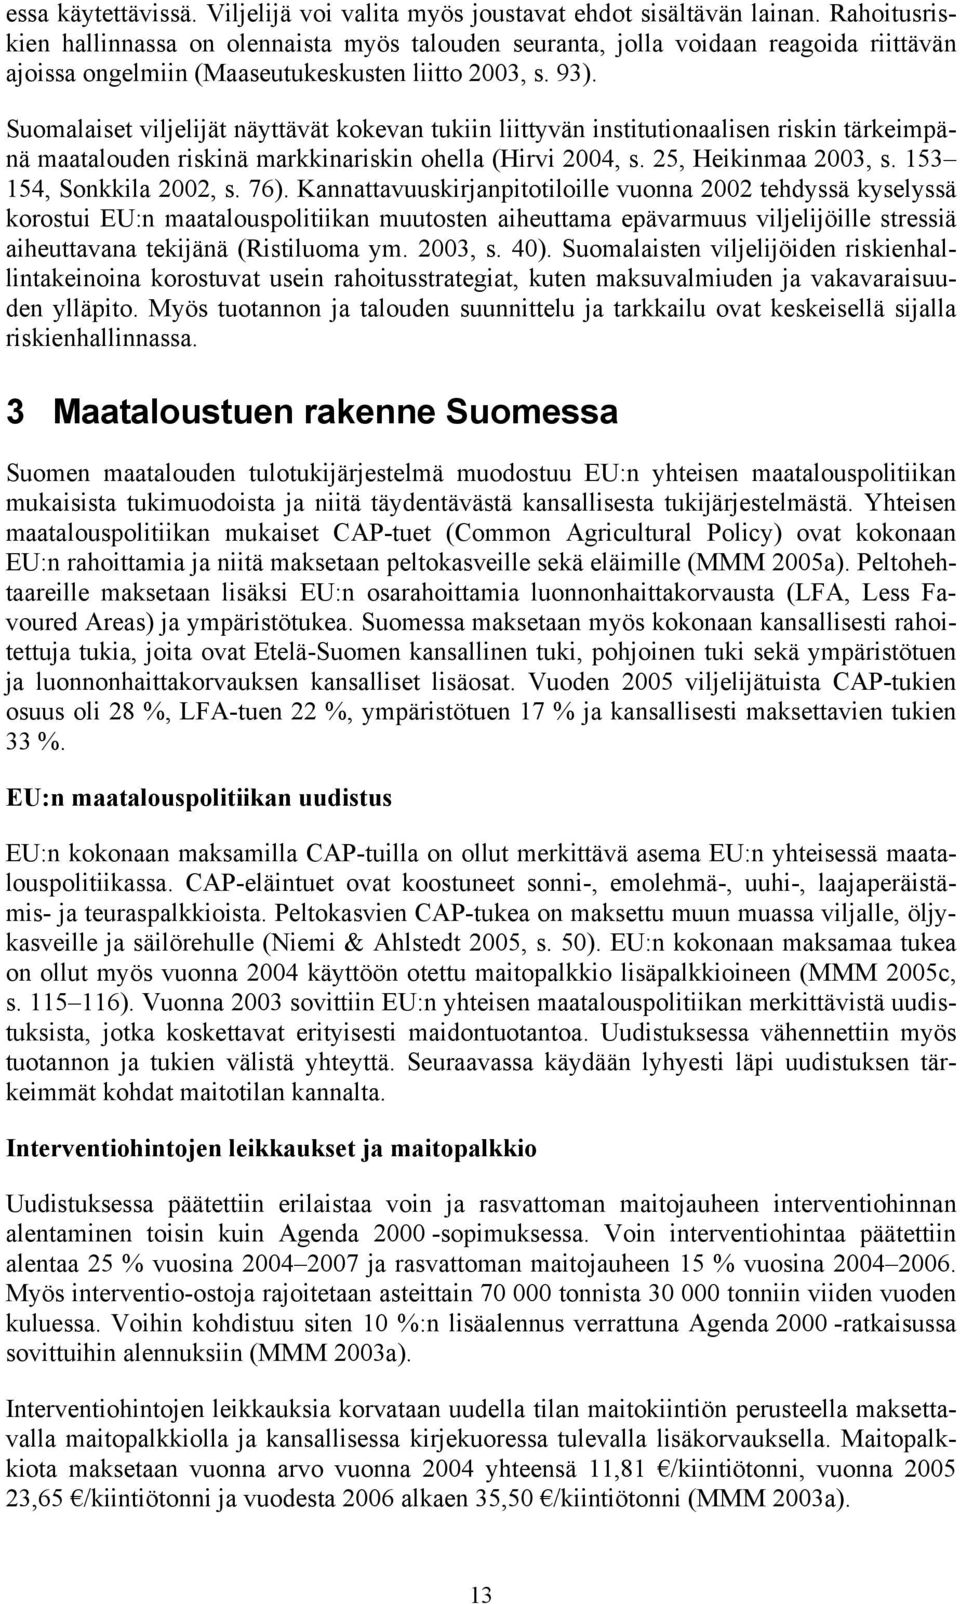 Suomalaiset viljelijät näyttävät kokevan tukiin liittyvän institutionaalisen riskin tärkeimpänä maatalouden riskinä markkinariskin ohella (Hirvi 2004, s. 25, Heikinmaa 2003, s.